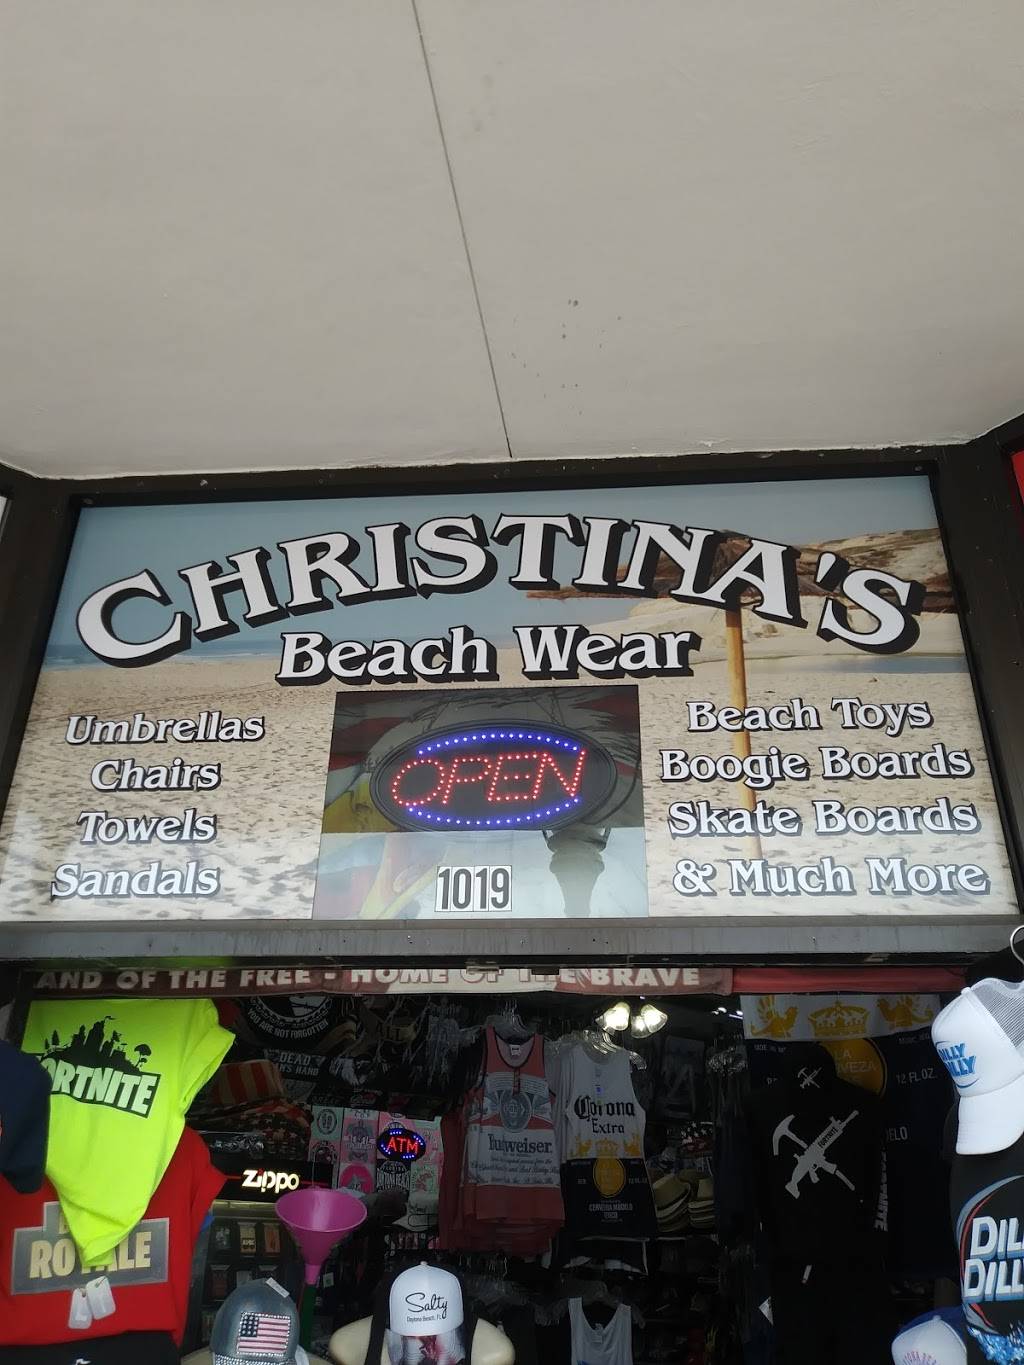 Christinas Beachwear & Gifts | 1019 Main St, Daytona Beach, FL 32118 | Phone: (386) 255-9132